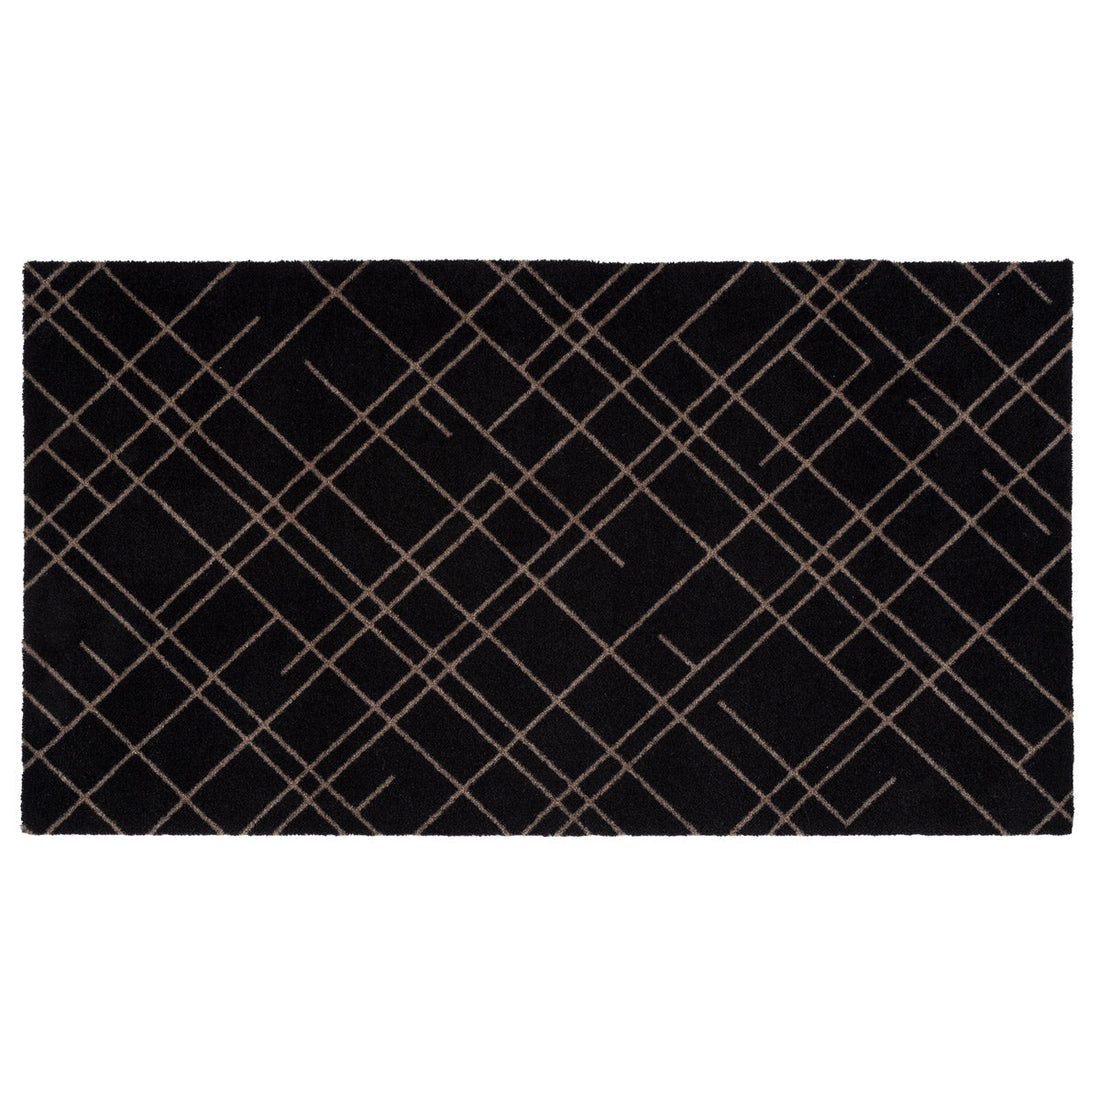 Bodenmatte 67 x 120 cm - Linien/Sandschwarz